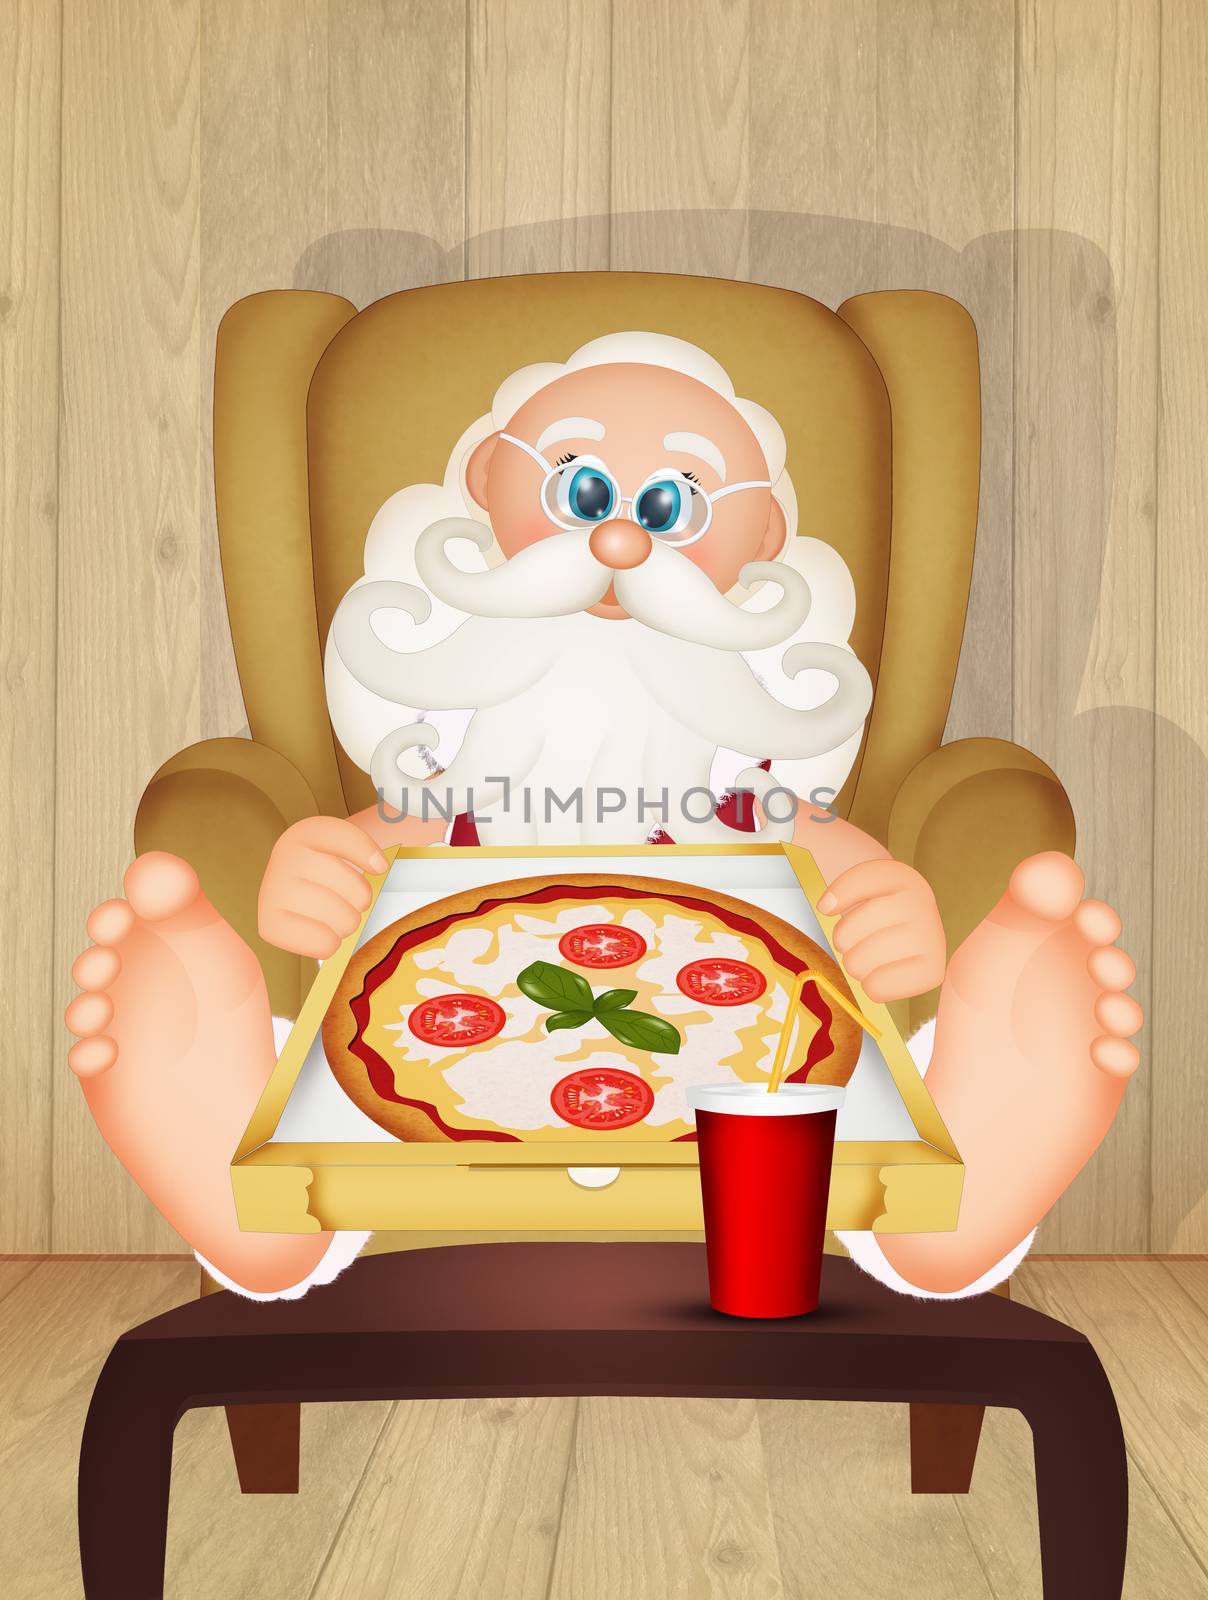 Santa Claus eating pizza by adrenalina